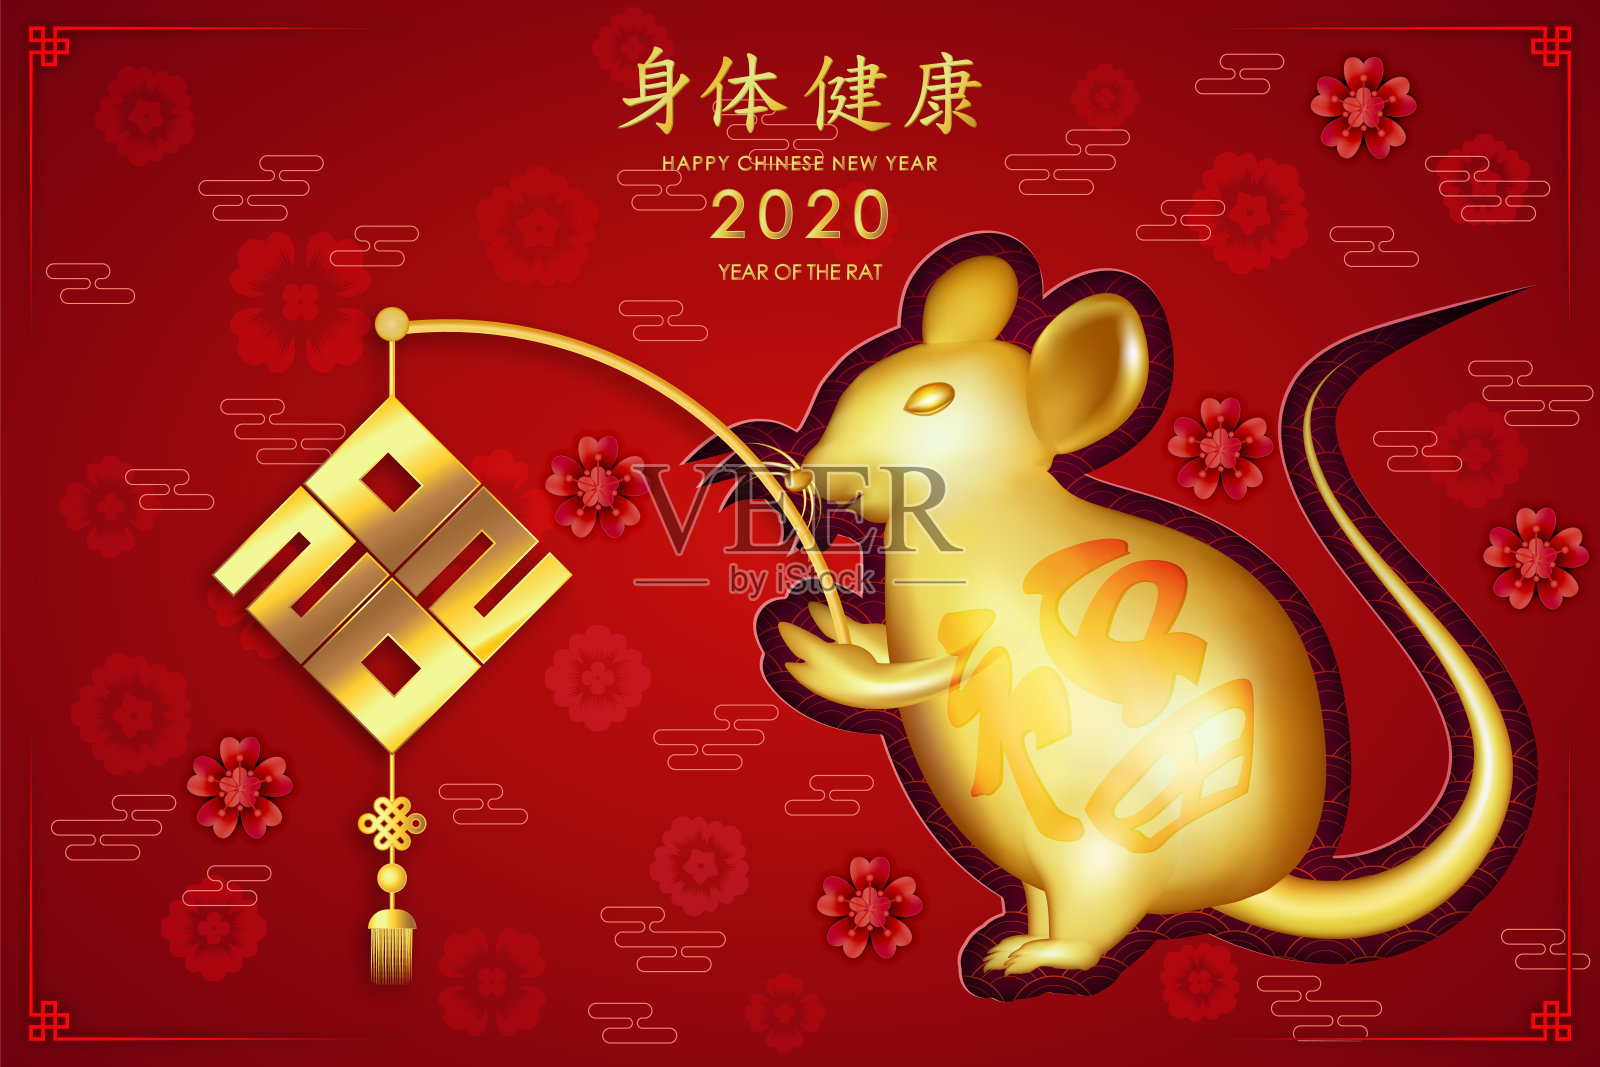 2020年鼠年春节快乐。金鼠祝你度过一个金色的春节。(中文字母表示新年快乐)设计模板素材